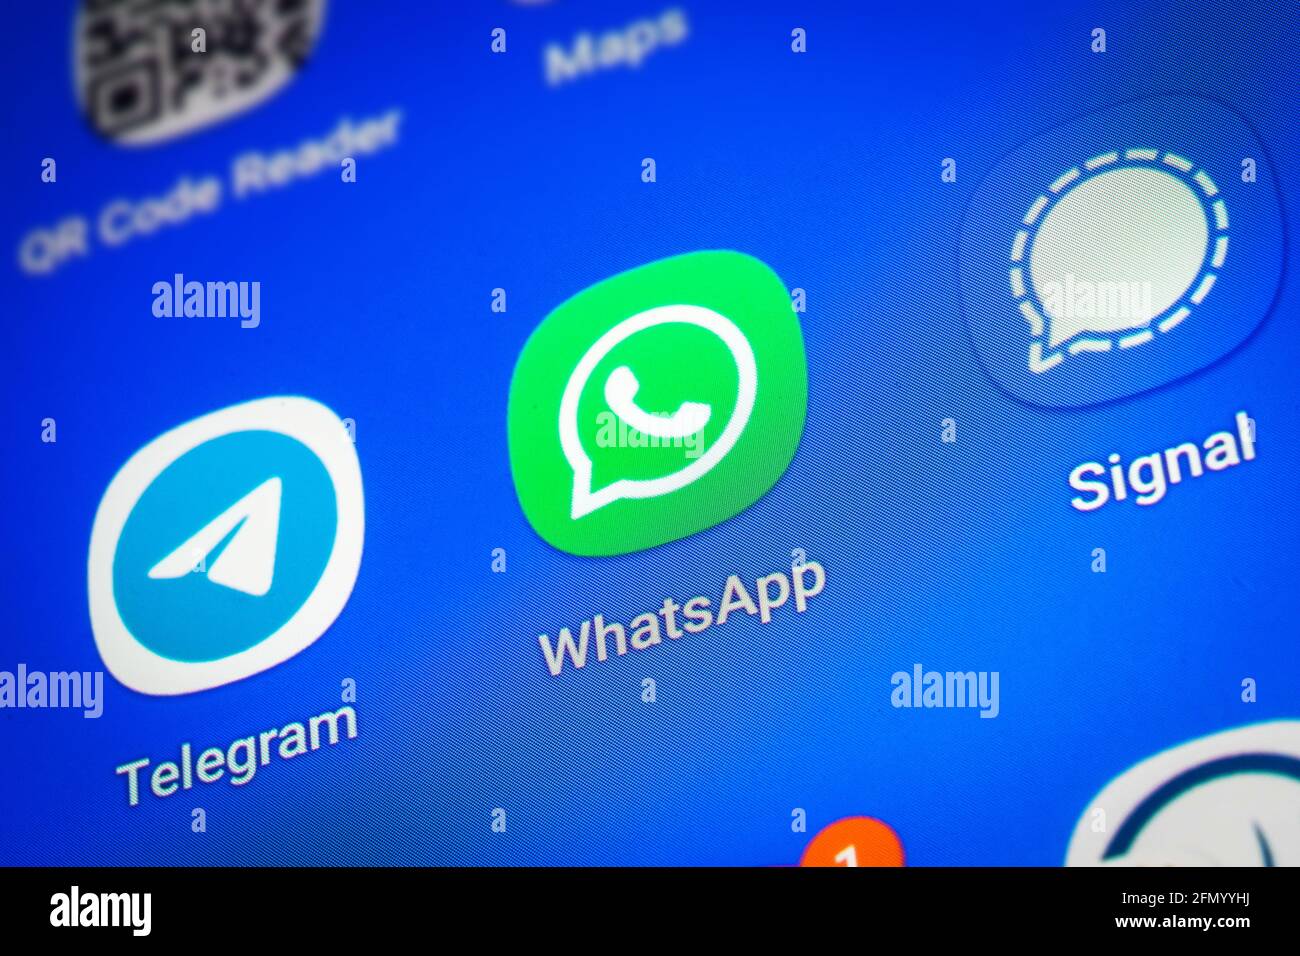 Logos der Social-Media-Messenger-Apps Telegram, WhatsApp und Signal auf dem Bildschirm eines Smartphones Stockfoto